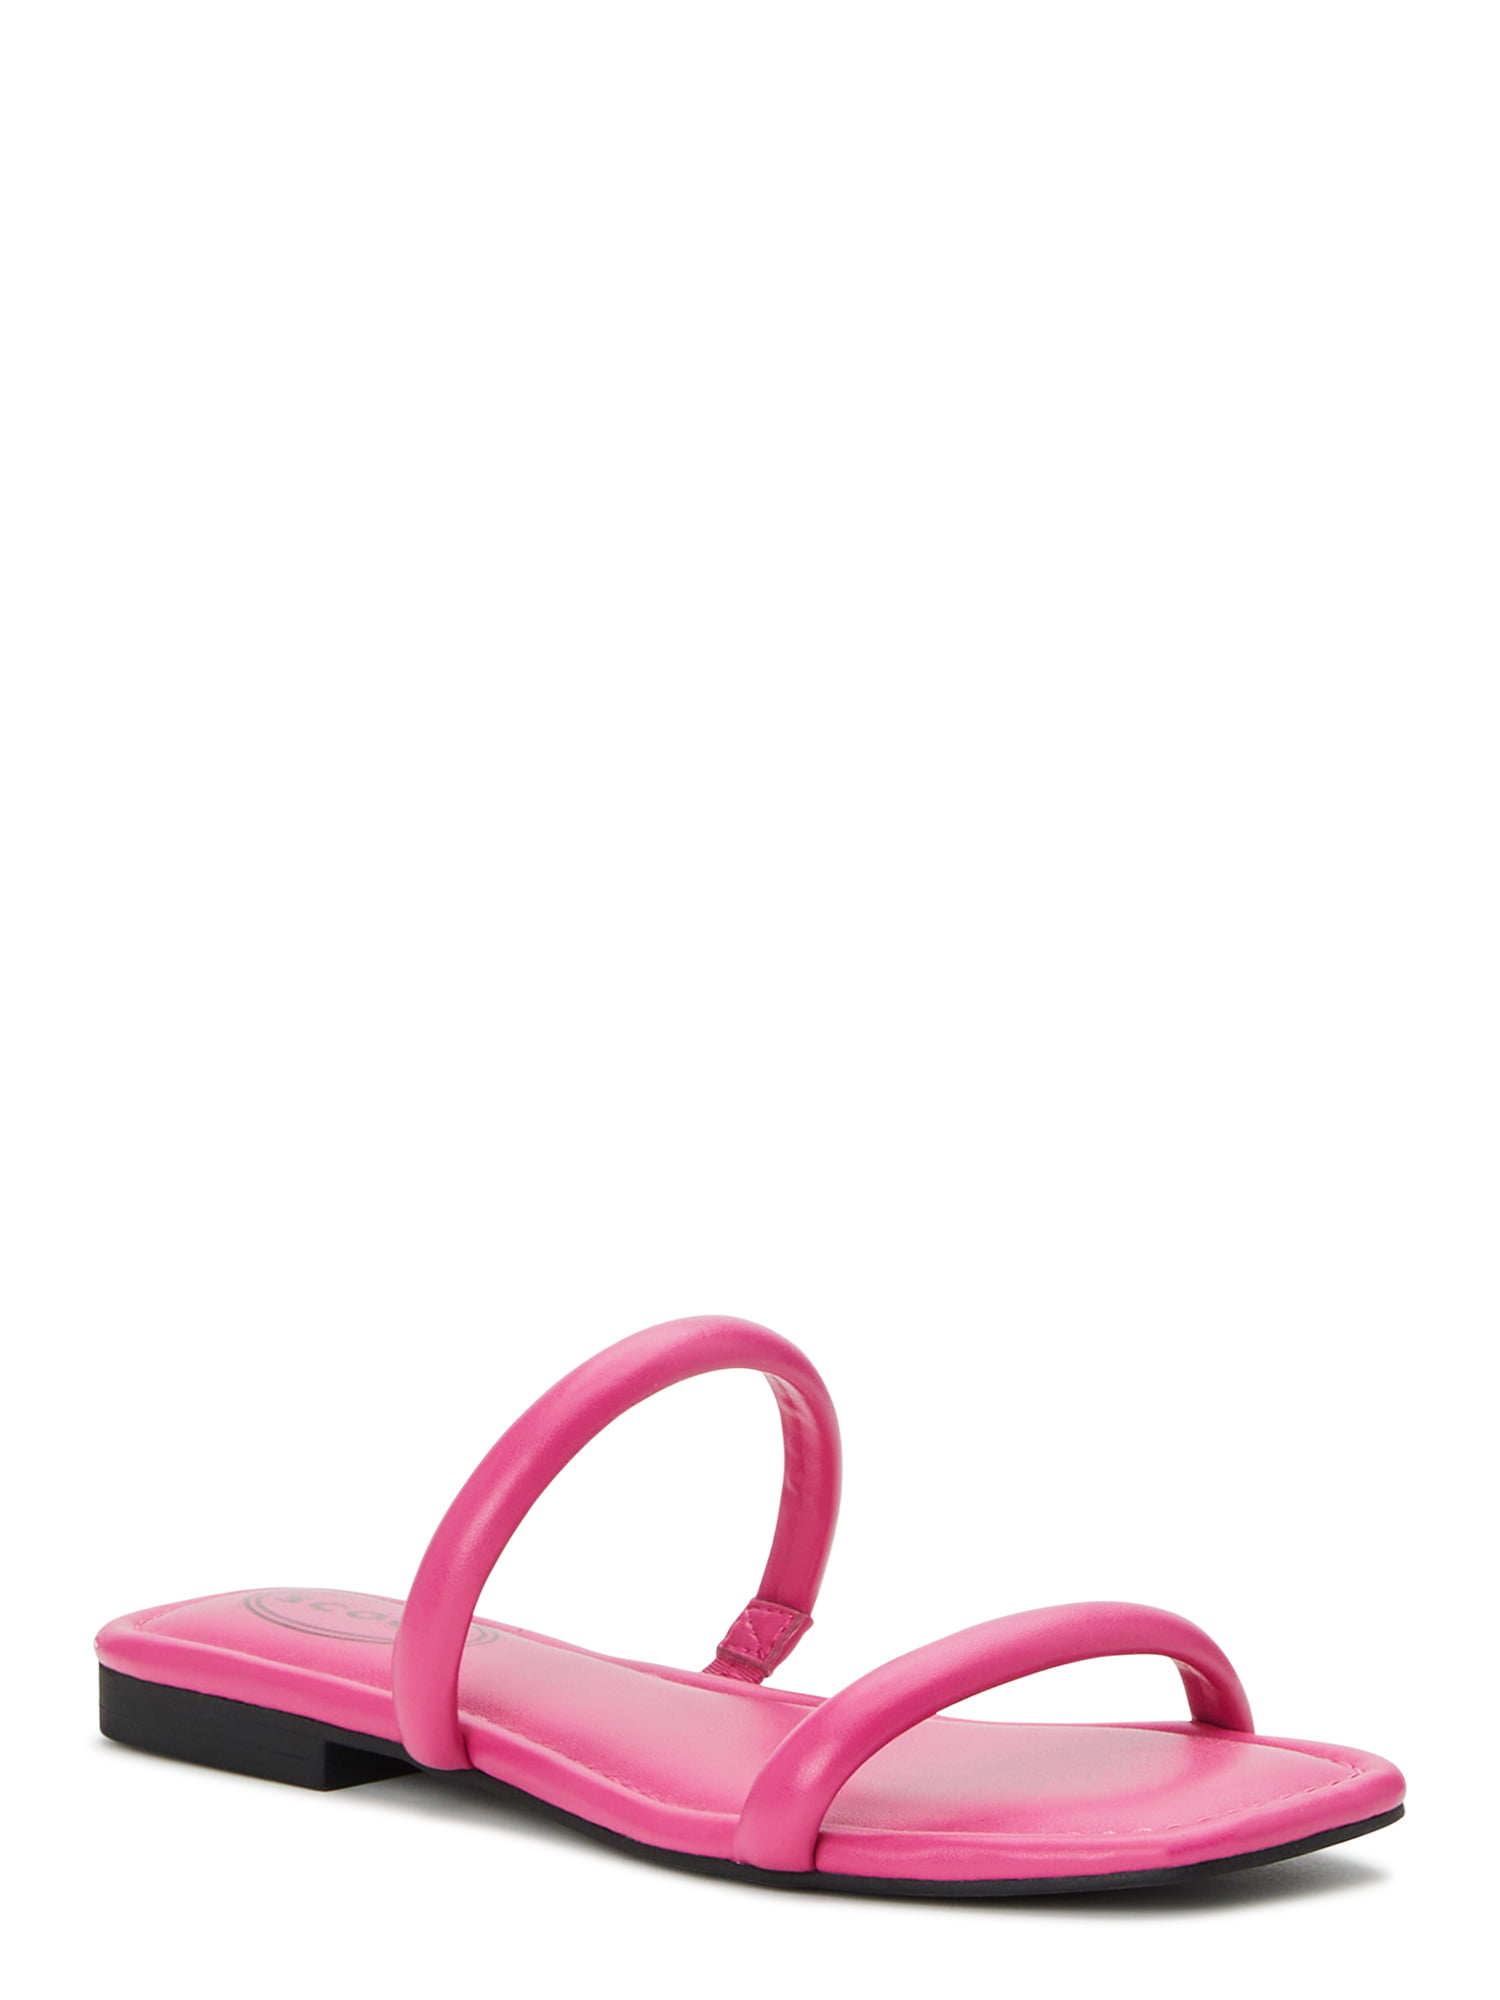 Scoop Women's Tubular Slide Sandals - Walmart.com